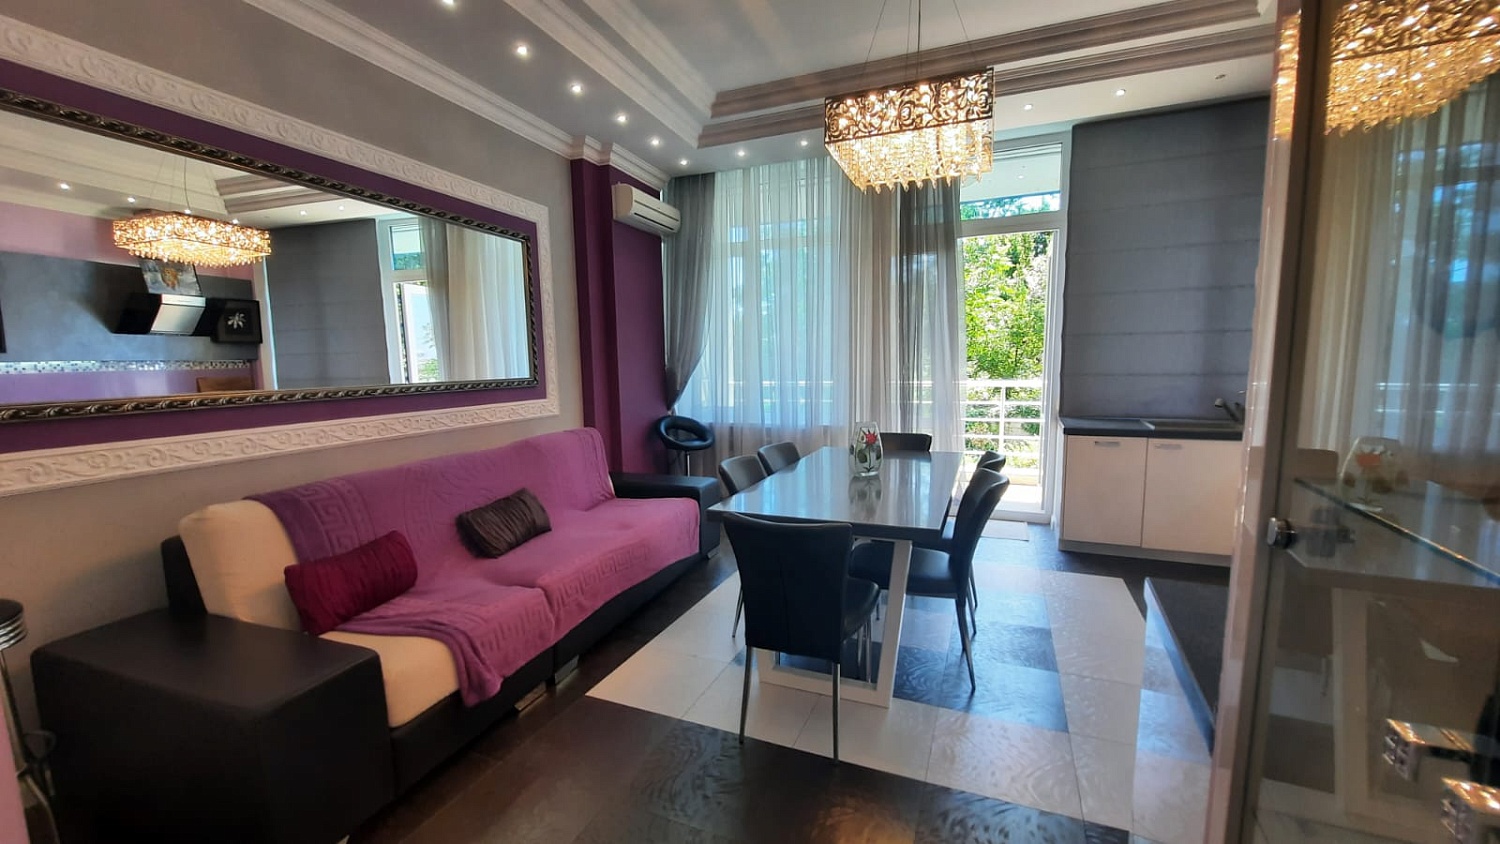 2-х комнатная квартира в Гурзуфе в жилом комплексе «Ришелье Шато».